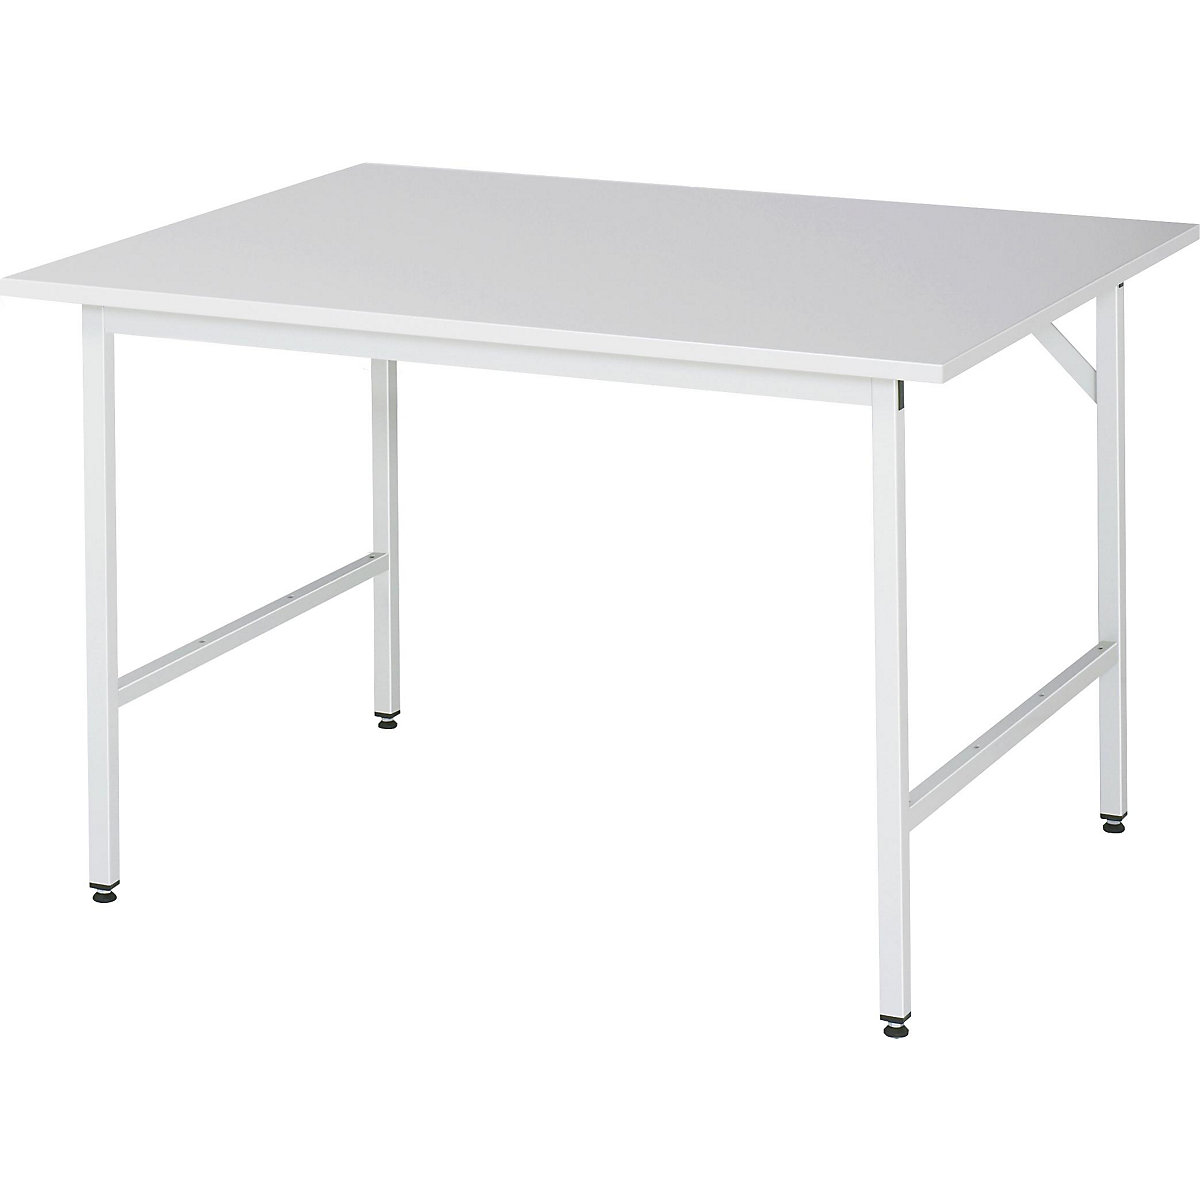 Stół roboczy, z regulacją wysokości – RAU, 800 – 850 mm, blat z płyty wiórowej, pokryty melaminą, szer. x głęb. 1250 x 1000 mm, jasnoszary-13